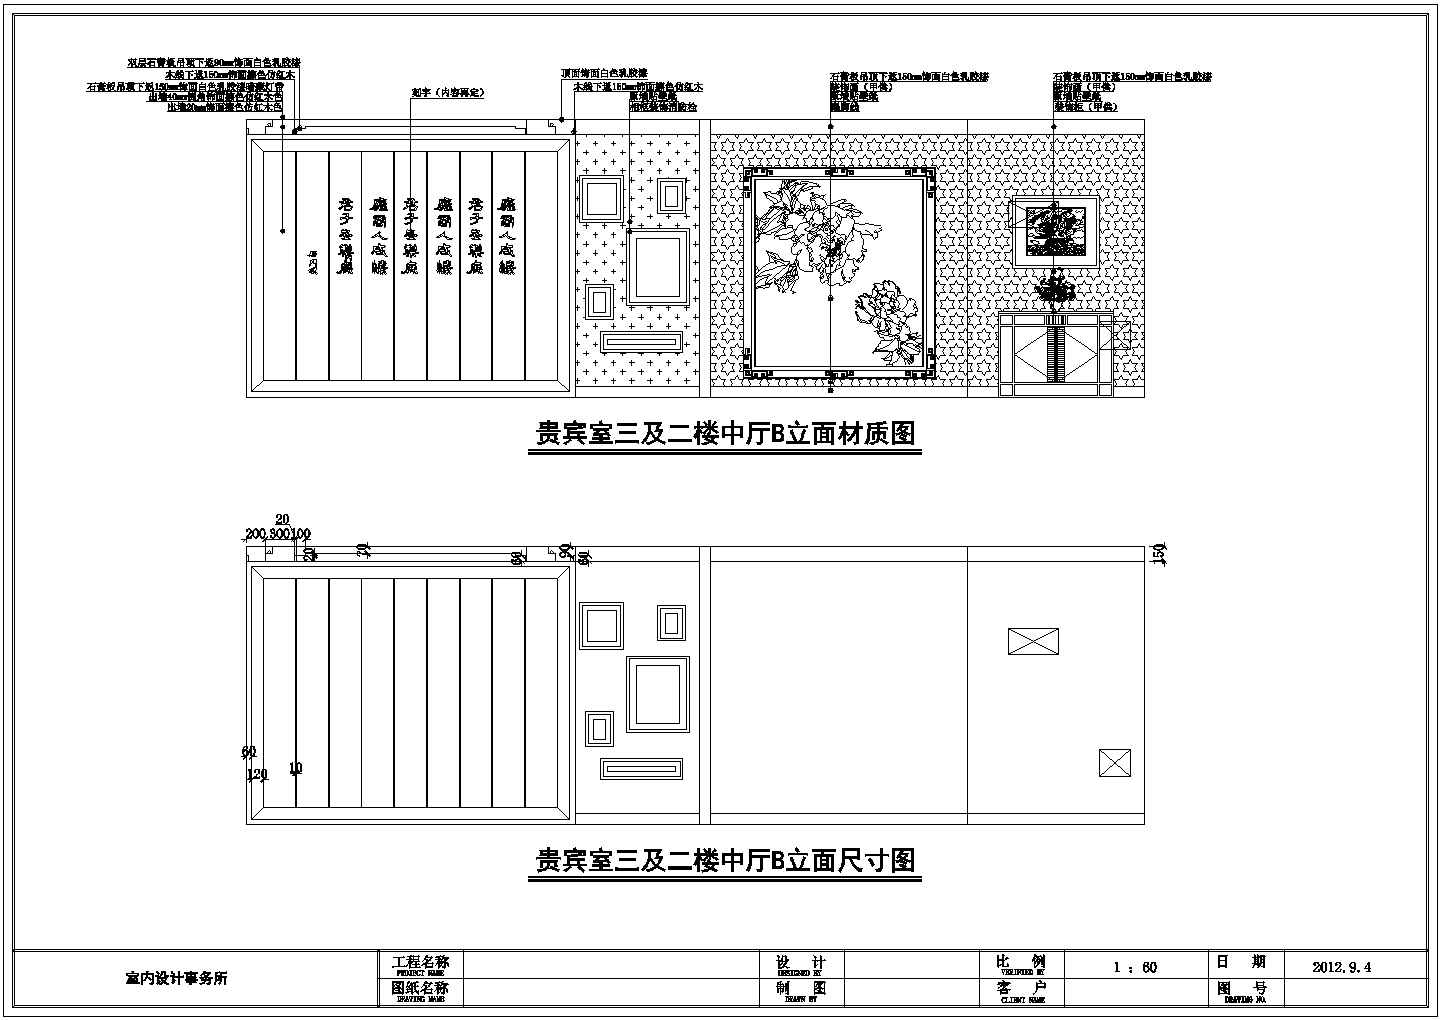 【西安】钟鼓某两层茶楼室内装修设计施工图